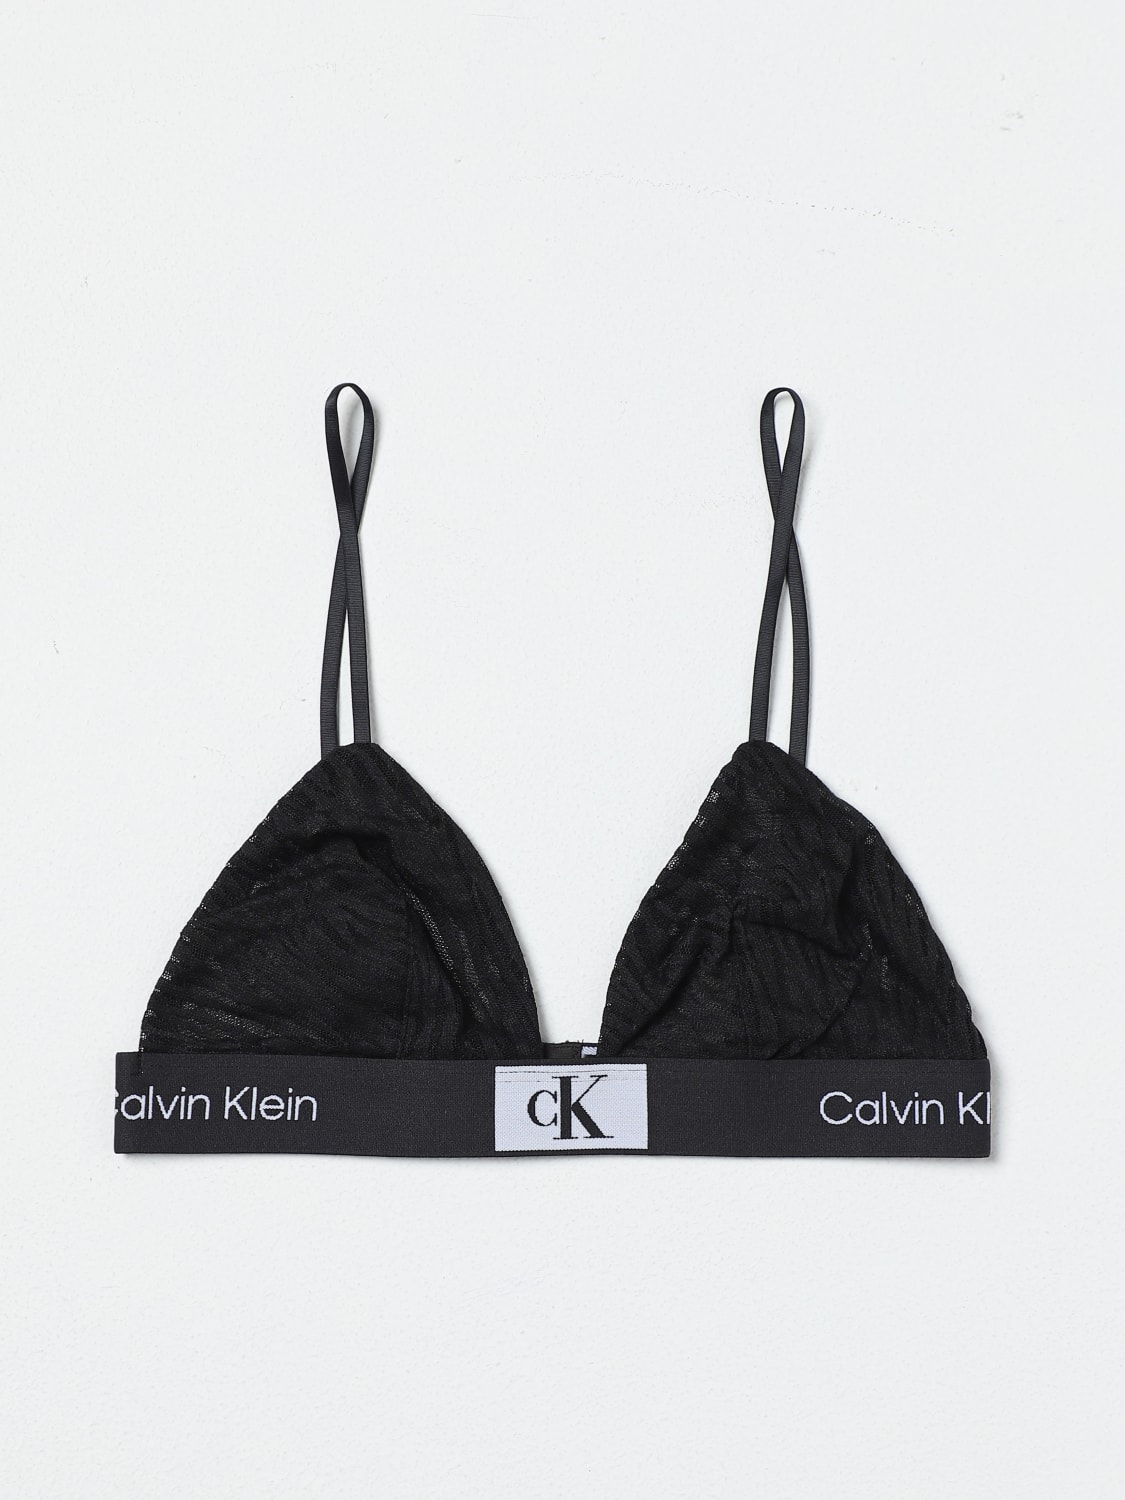 Calvin Klein Underwear Black & White Typography Bralette Bra